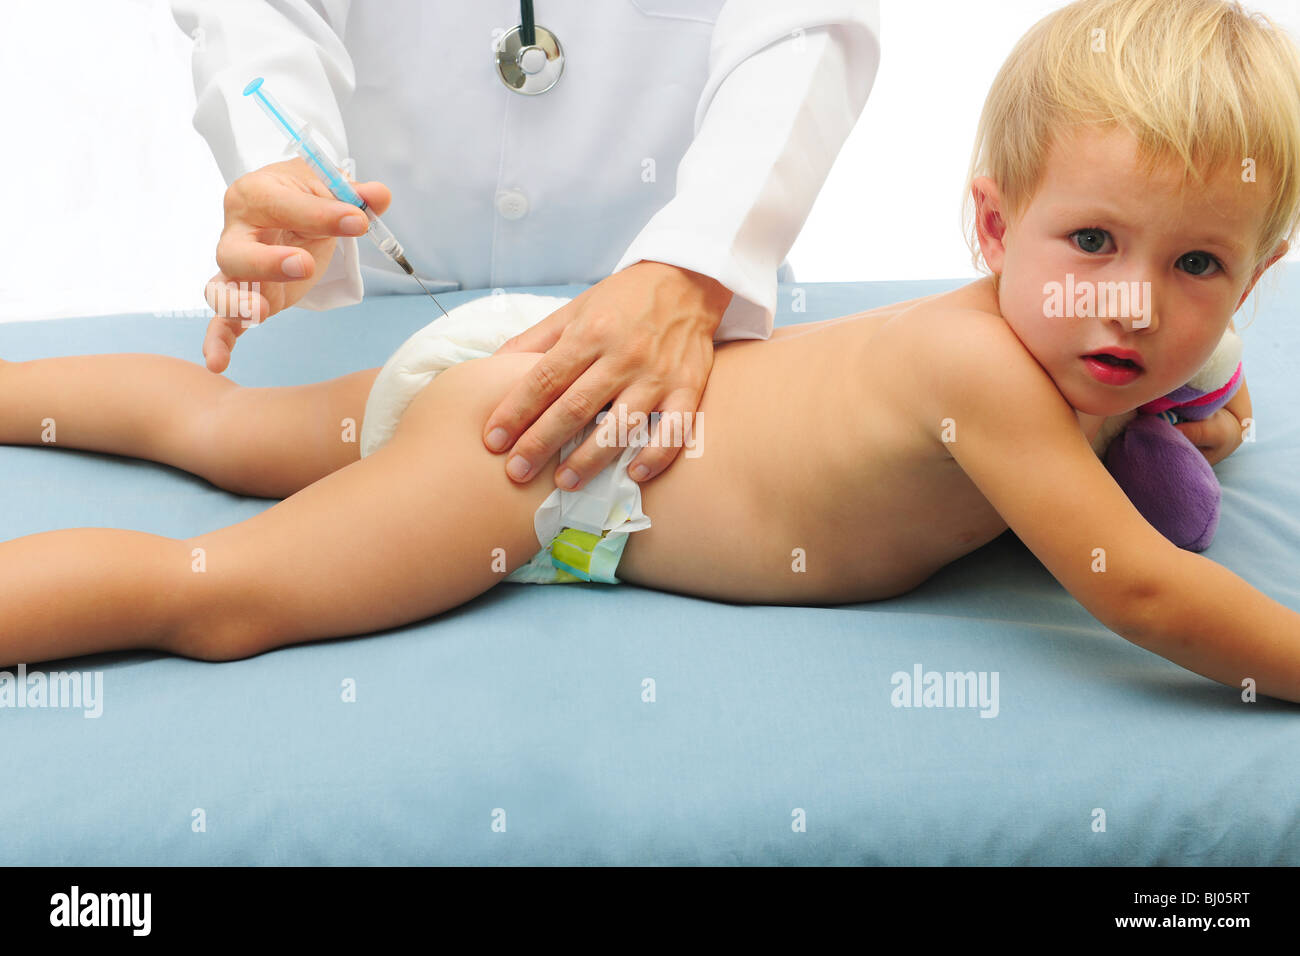 Прививка в ножку ребенку. Уколы маленьким детям. Внутримышечная инъекция детям.